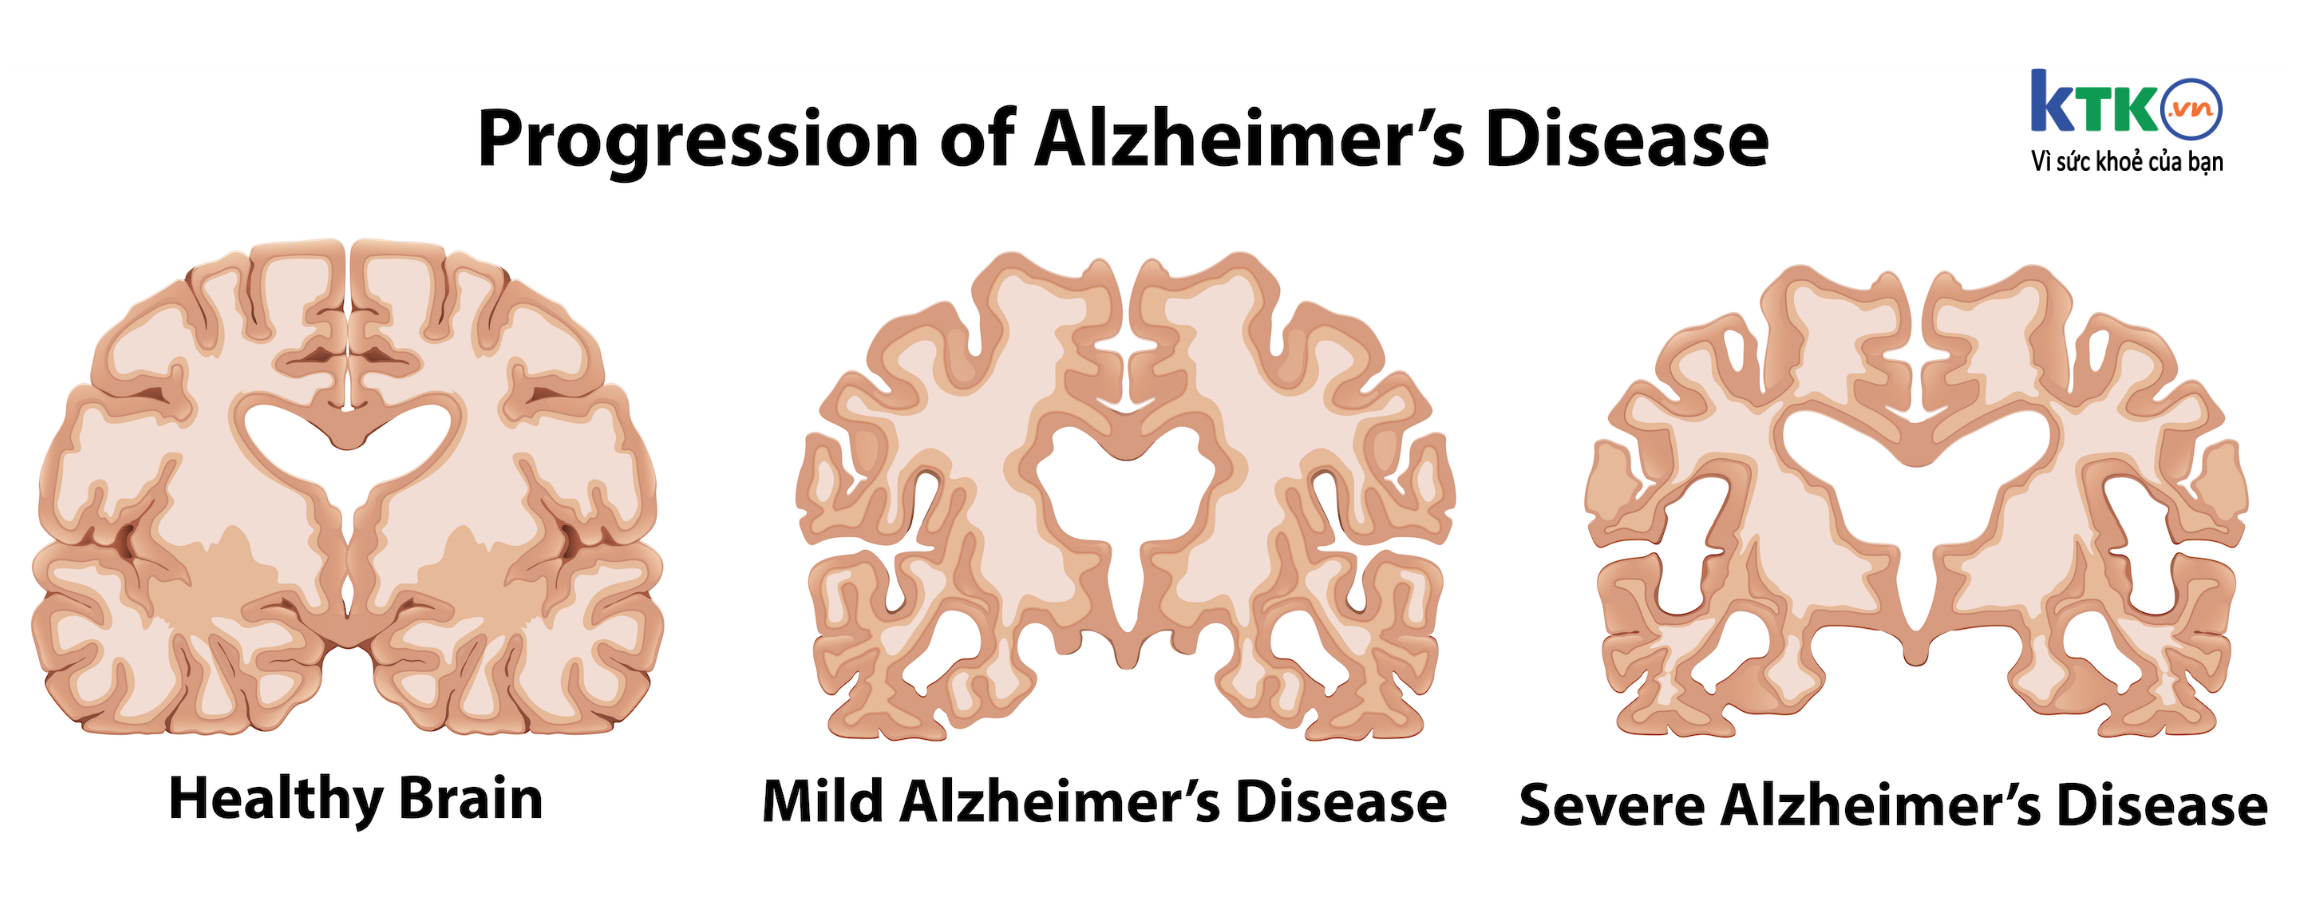 Bệnh Alzheimer’s biểu hiện như nào?